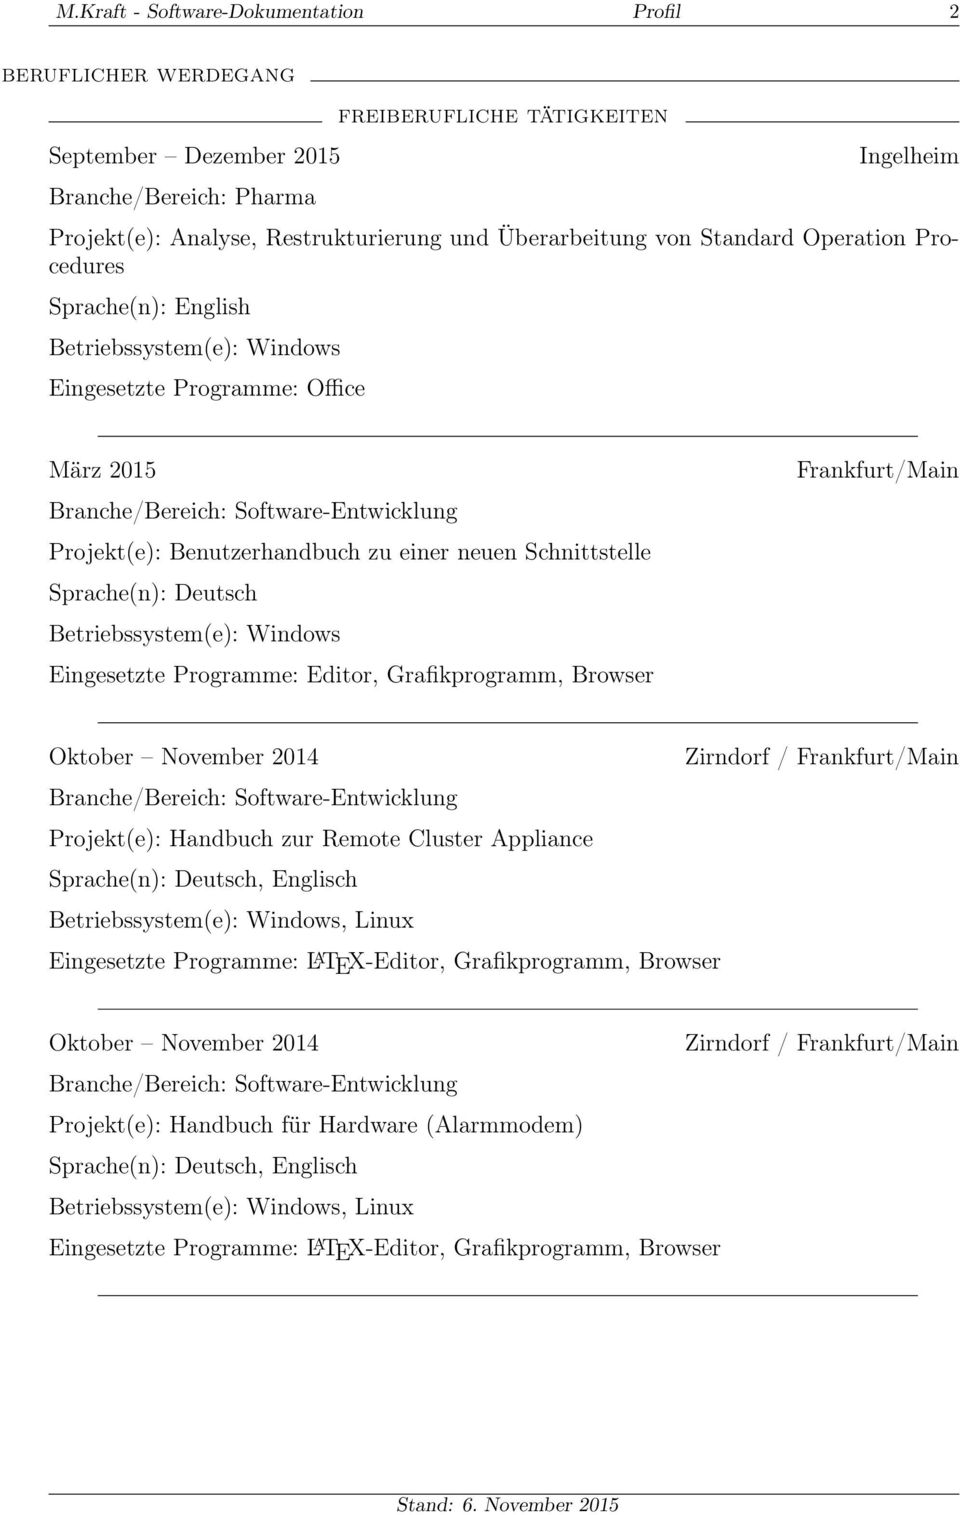 Schnittstelle Eingesetzte Programme: Editor, Grafikprogramm, Browser Oktober November 2014 Zirndorf / Projekt(e): Handbuch zur Remote Cluster Appliance, Englisch, Linux Eingesetzte